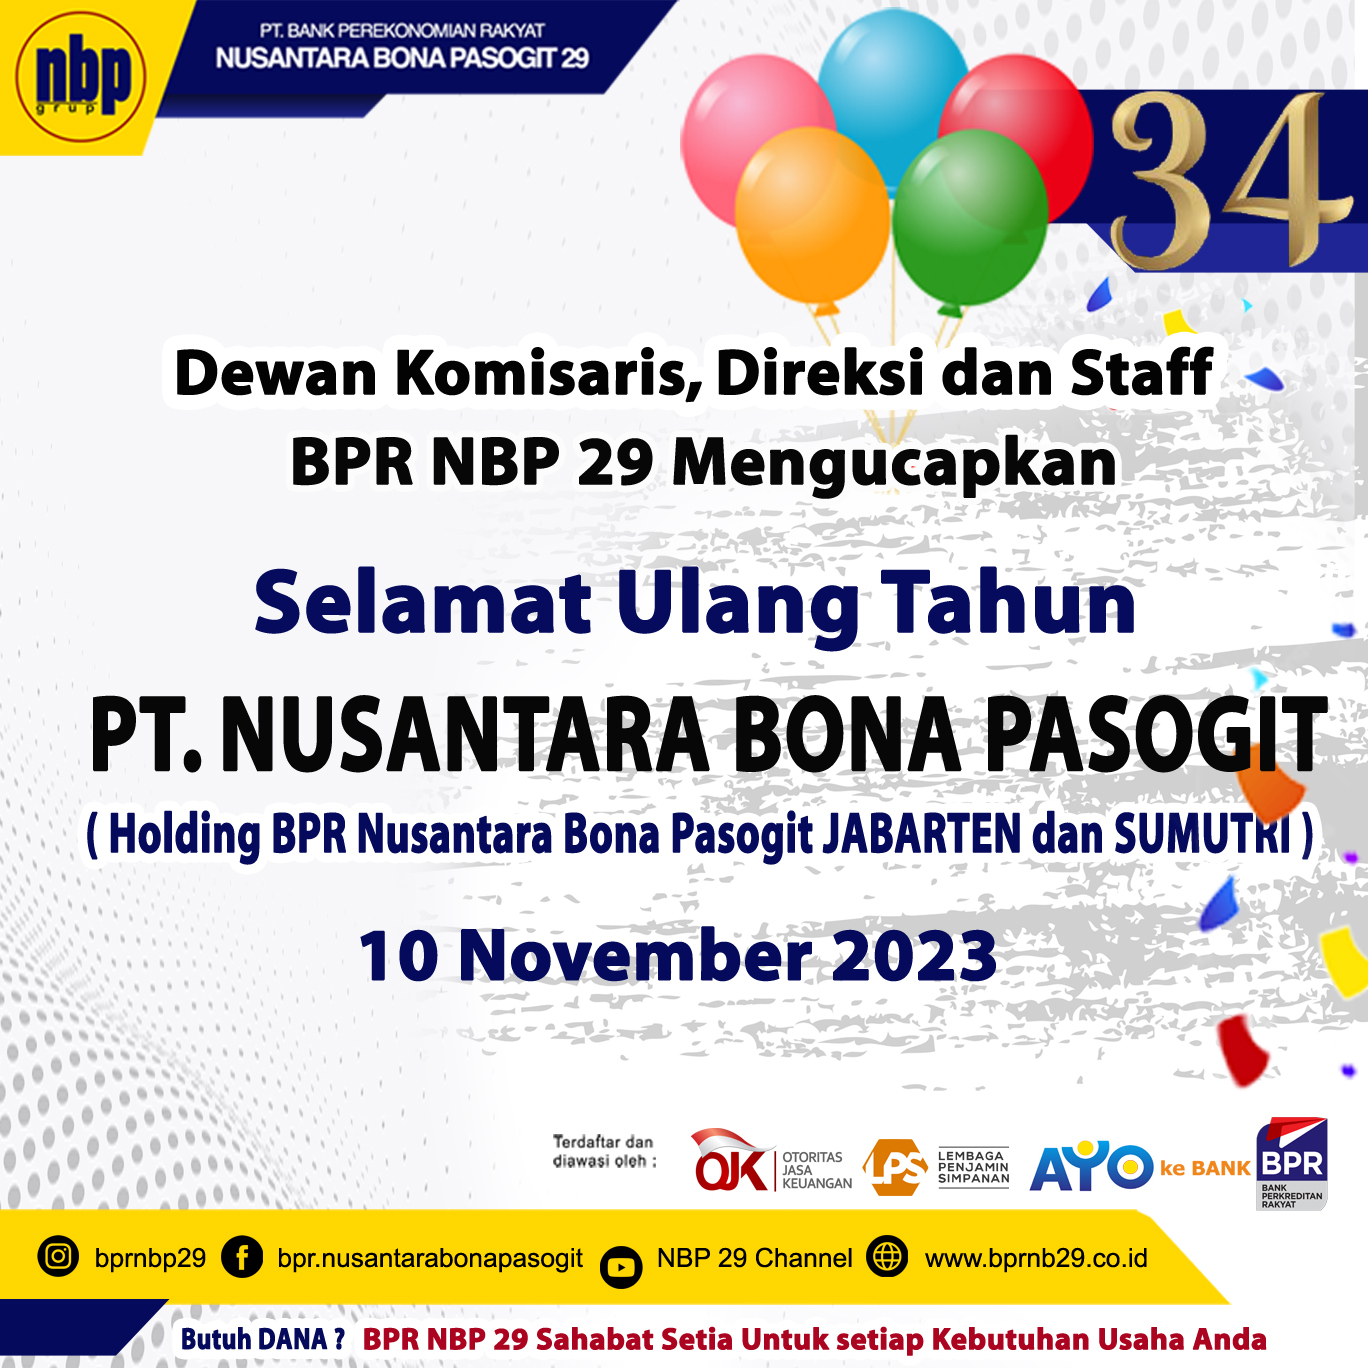 Selamat ulang tahun PT. Nusantara Bona Pasogit yang ke- 34